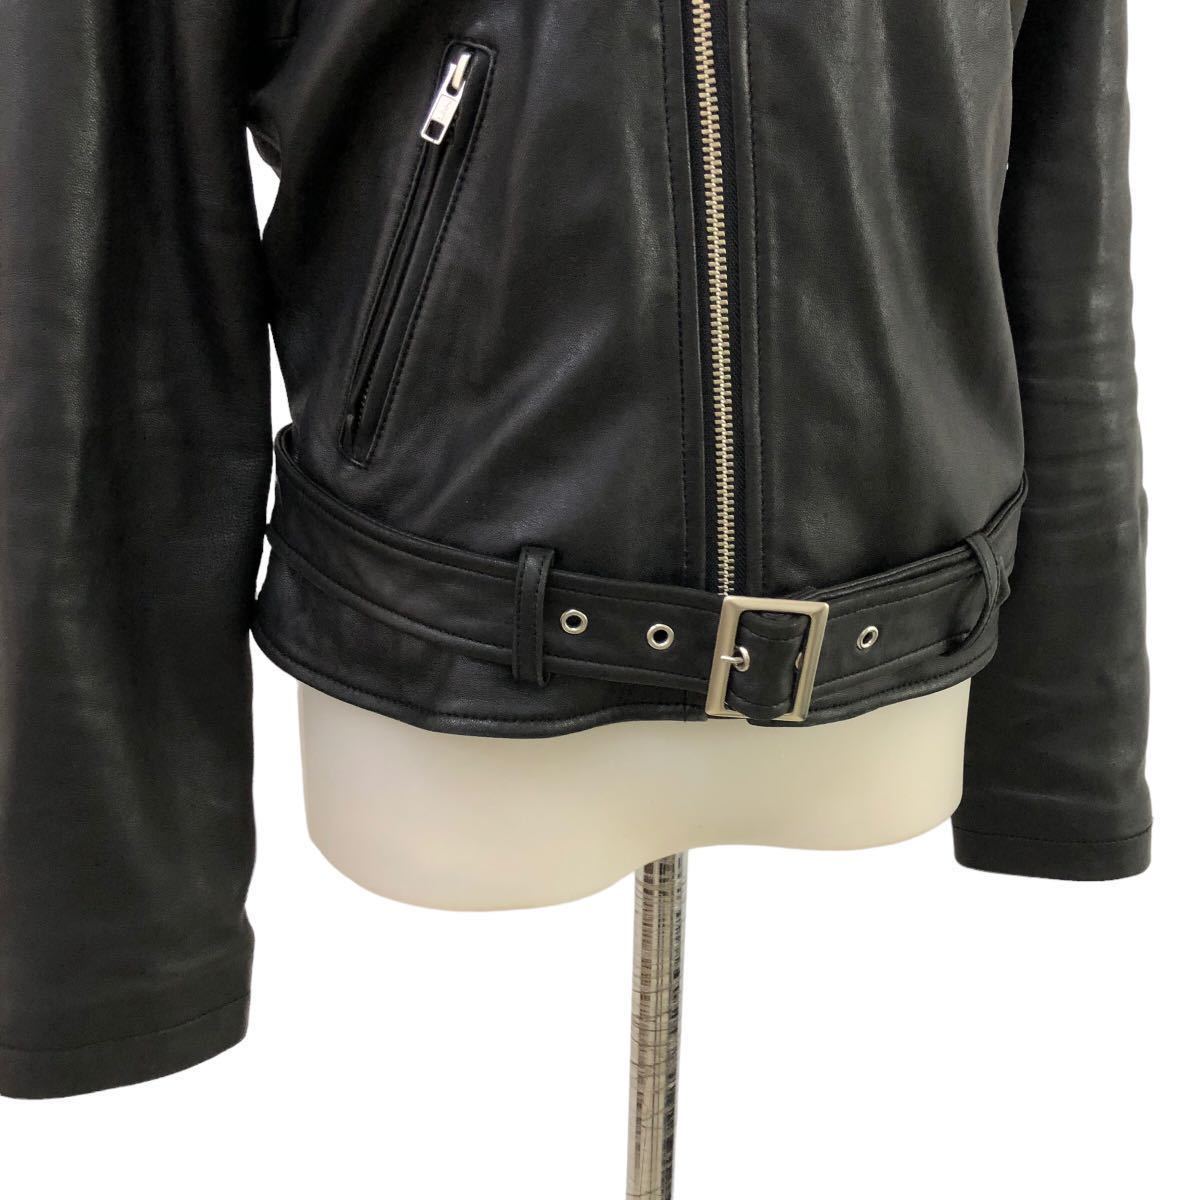 B360 Andemiu アンデミュウ ライダースジャケット レザージャケット 本革 レザー 皮革 羊革 アウター 上着 羽織り ブラック レディース Mの画像3